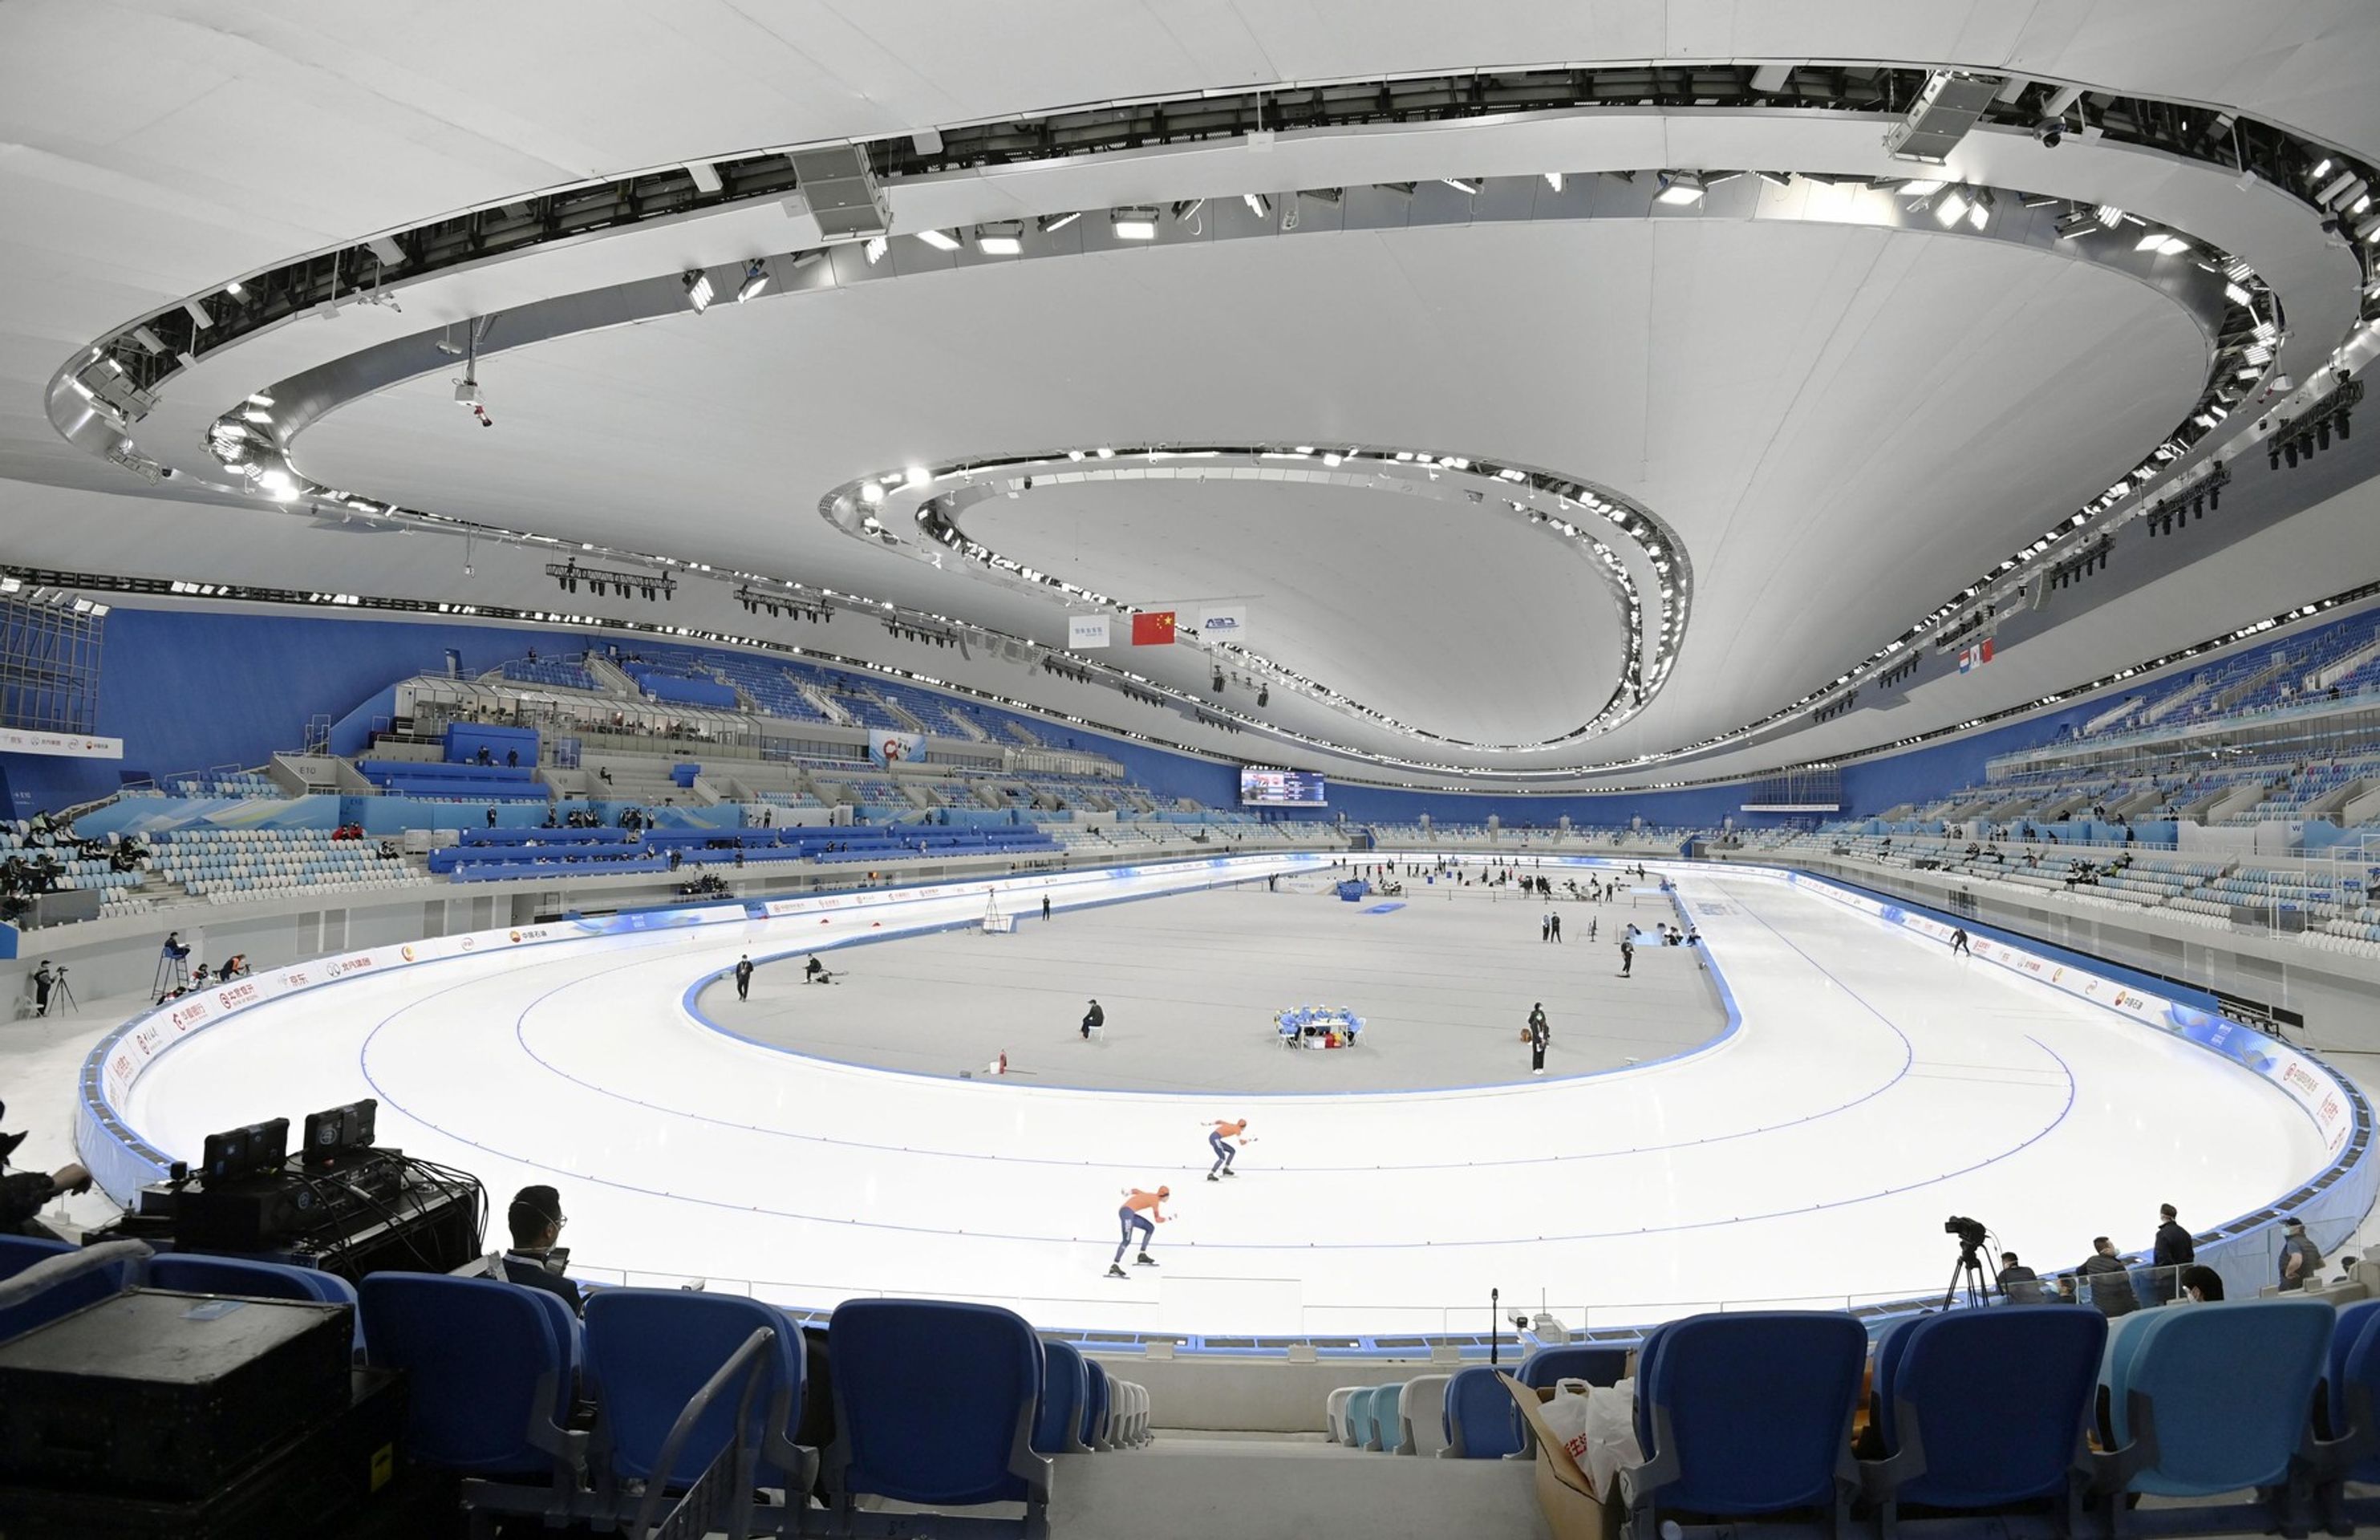 Rychlobruslařský ovál v národním stadionu - Pekingské sportoviště pro zimní olympijské hry v Číně 2022 (11/14)